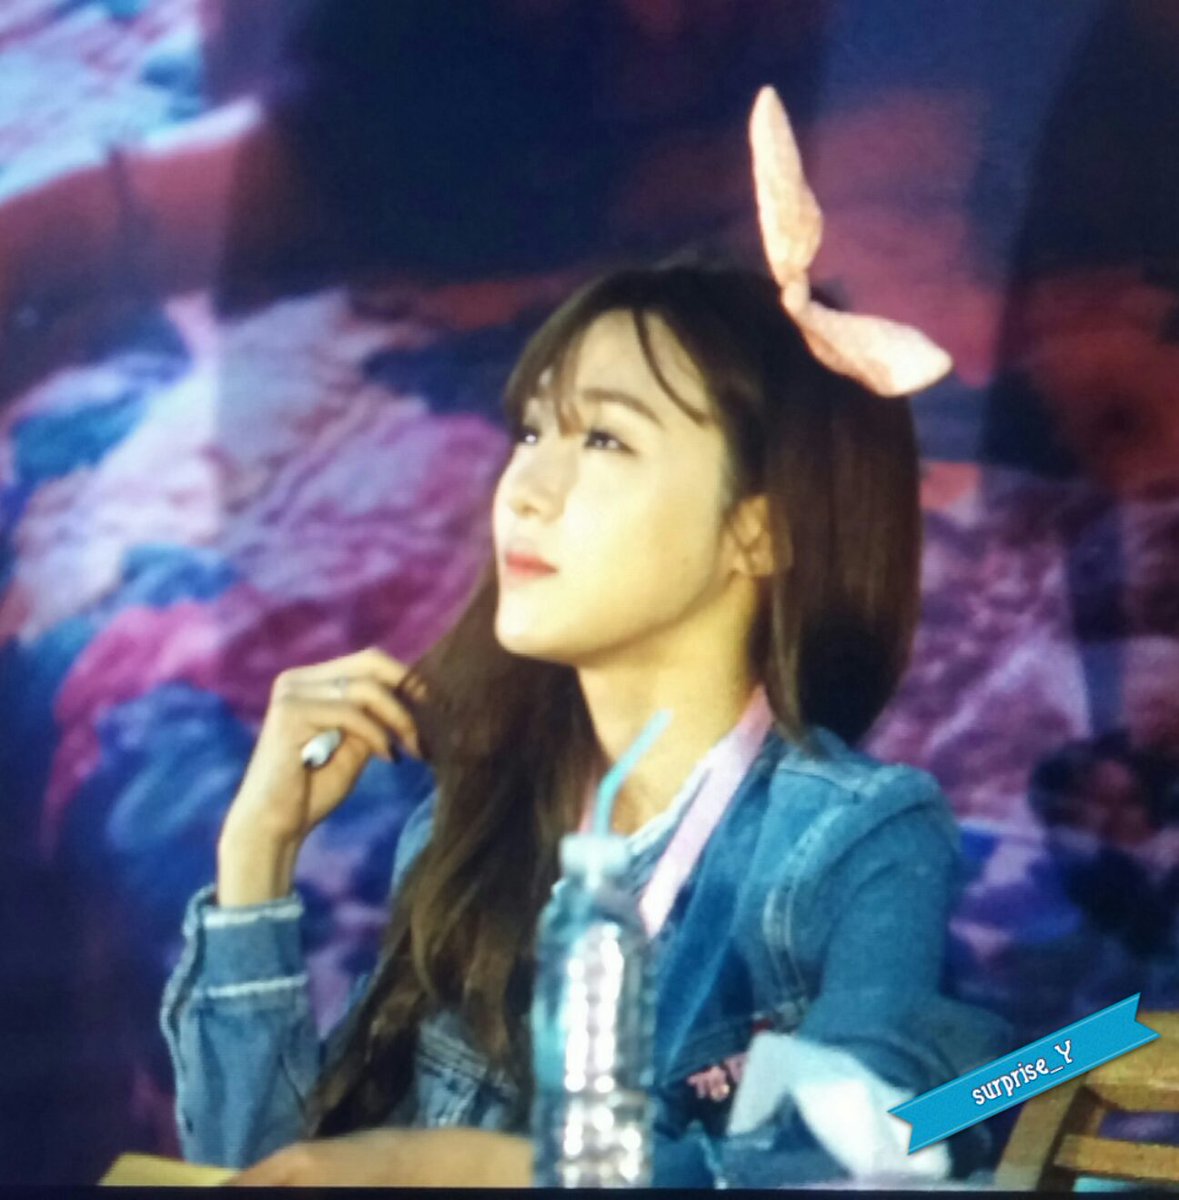 [PIC][06-06-2016]Tiffany tham dự buổi Fansign cho "I Just Wanna Dance" tại Busan vào chiều nay CkRaS73VEAIhm8w